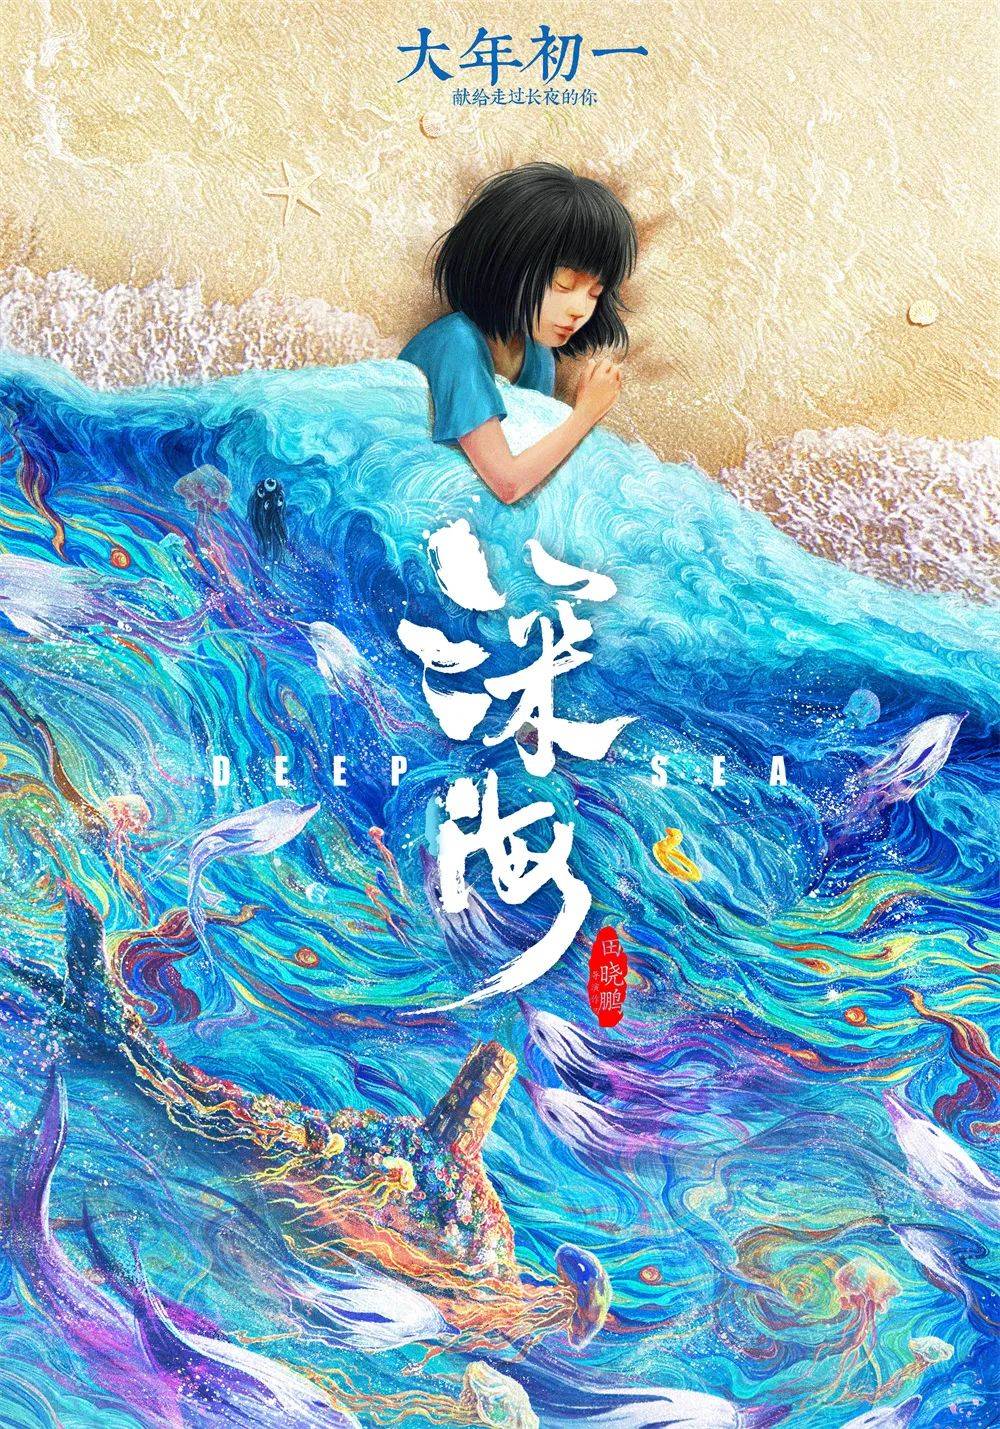 导演田晓鹏的新作《深海》，抑郁少女在深海的冒险故事，充满想象力的影像美得让人窒息